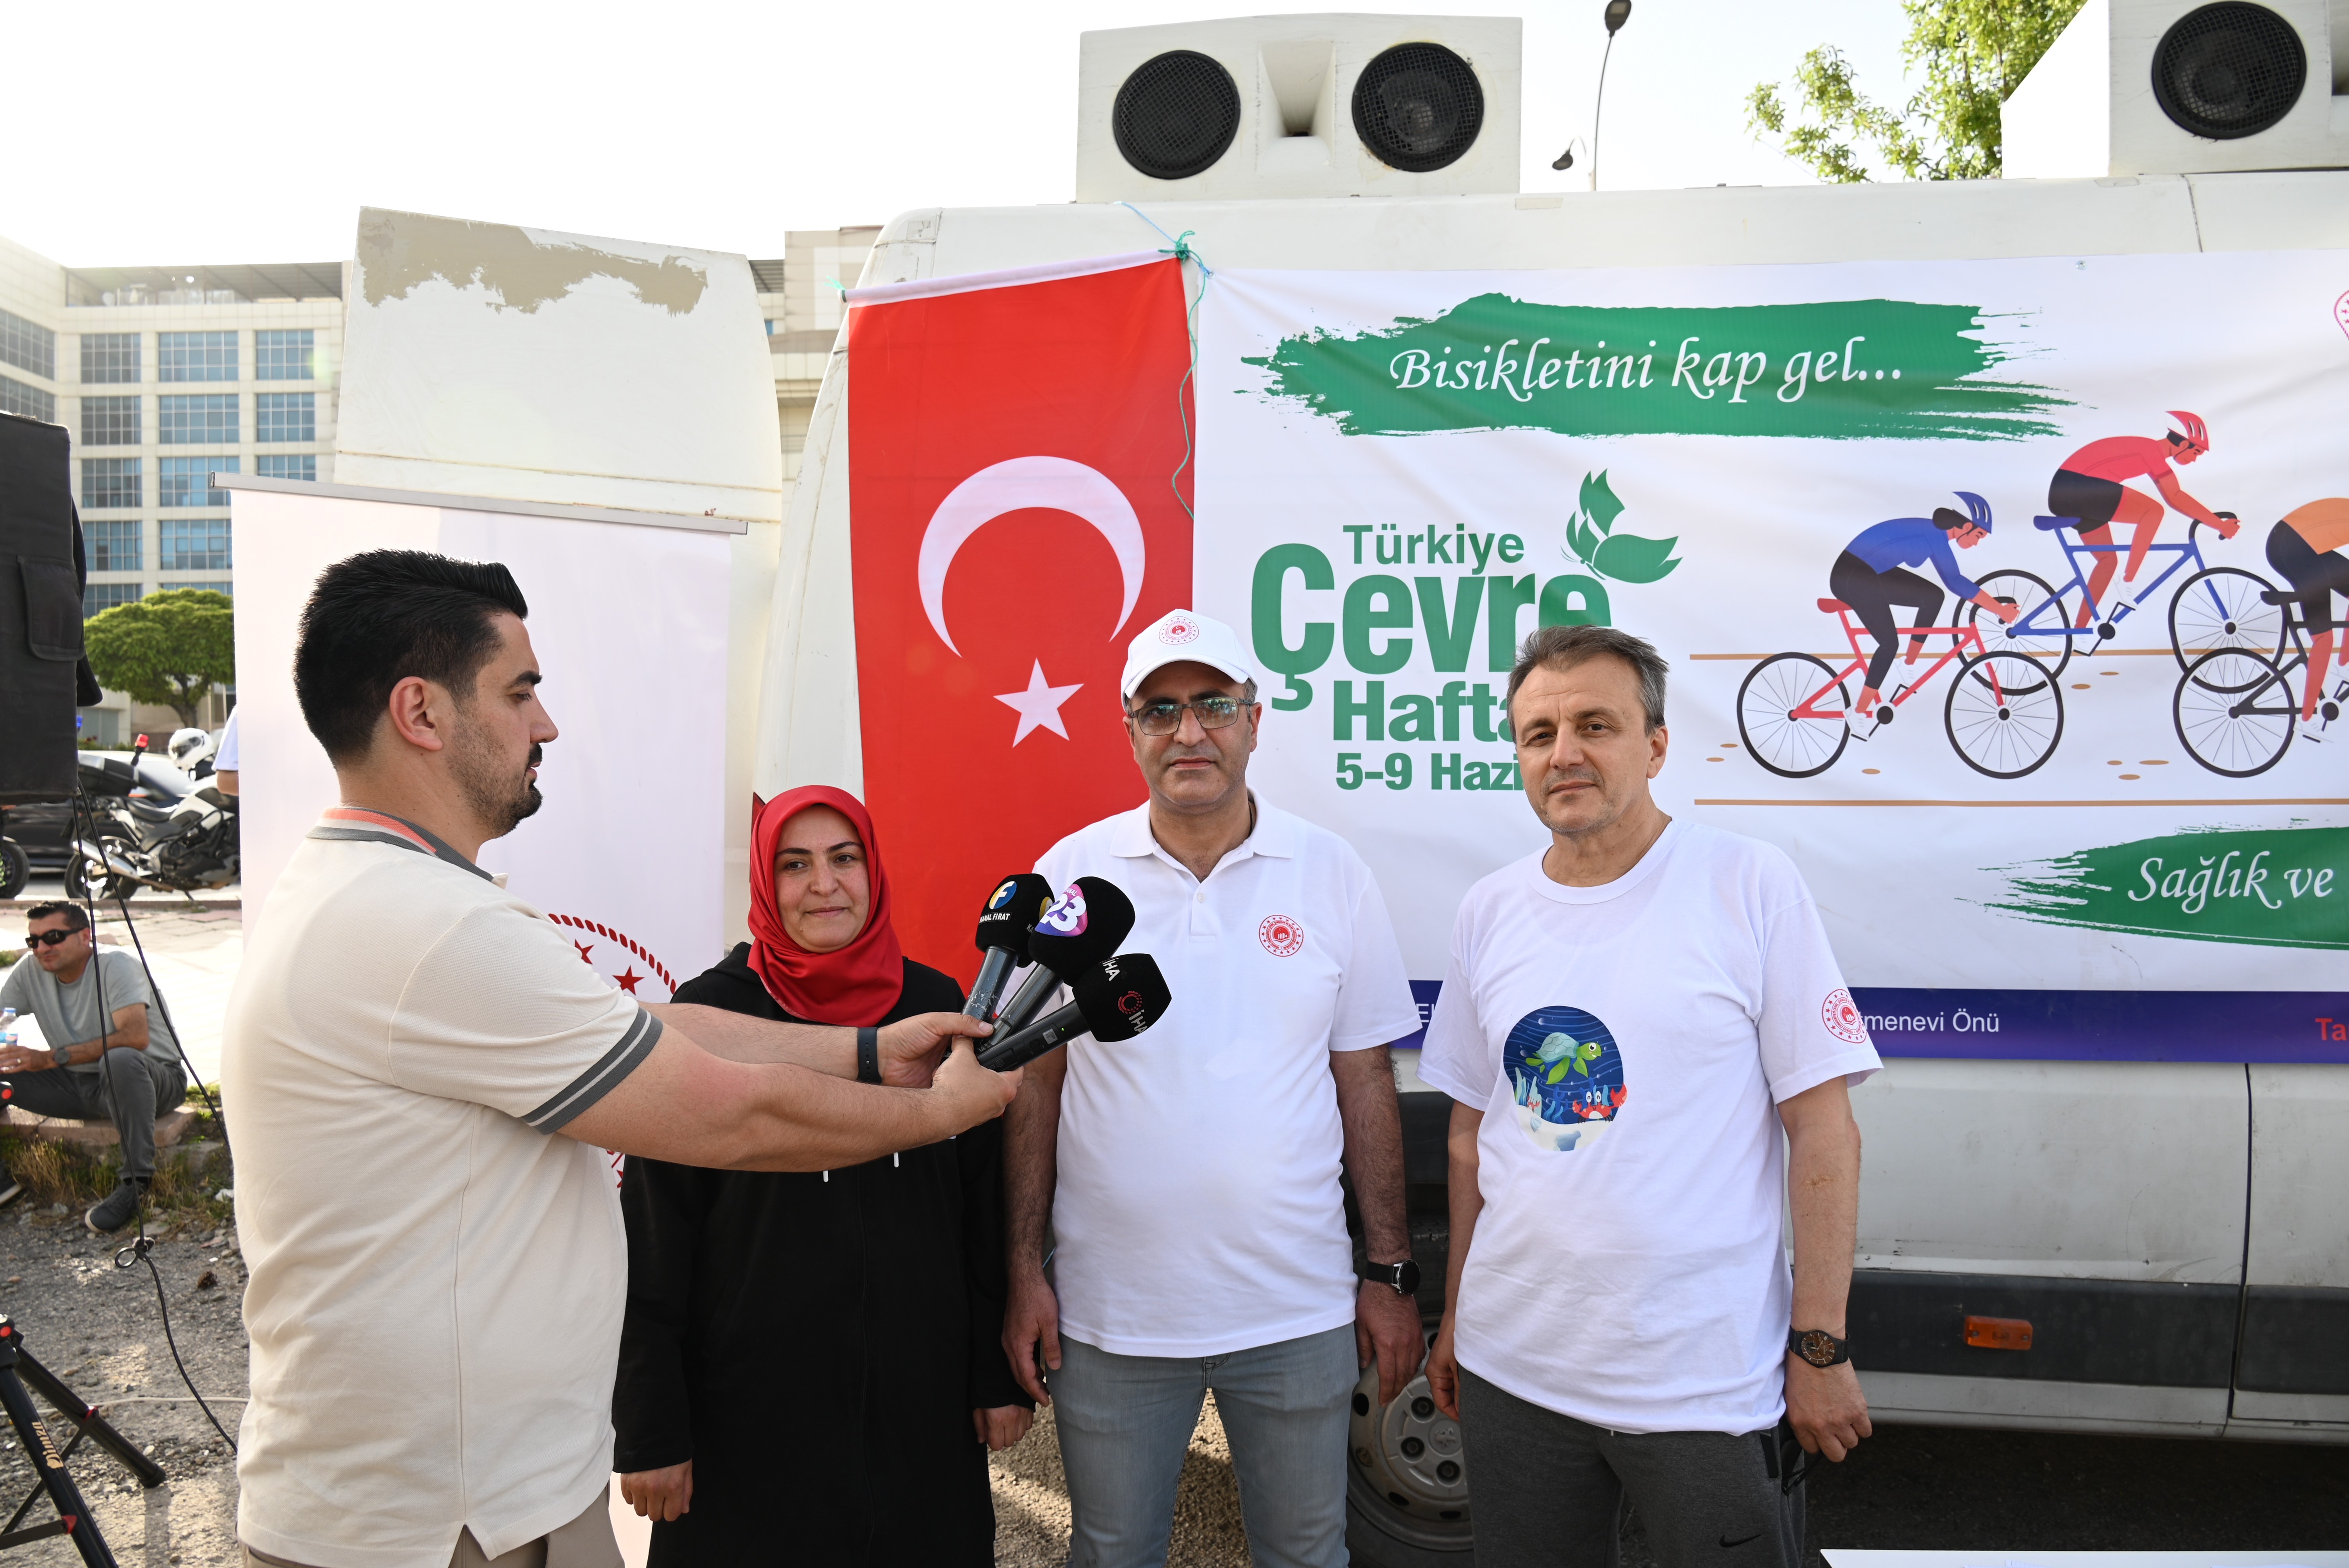 5-9 Haziran Türkiye Çevre Haftası Kapsamında “Bisikletini Kap Gel…., Sağlık ve Doğa İçin Pedal Çevir” sloganıyla Bisiklet Turu Etkinliği Düzenlendi.